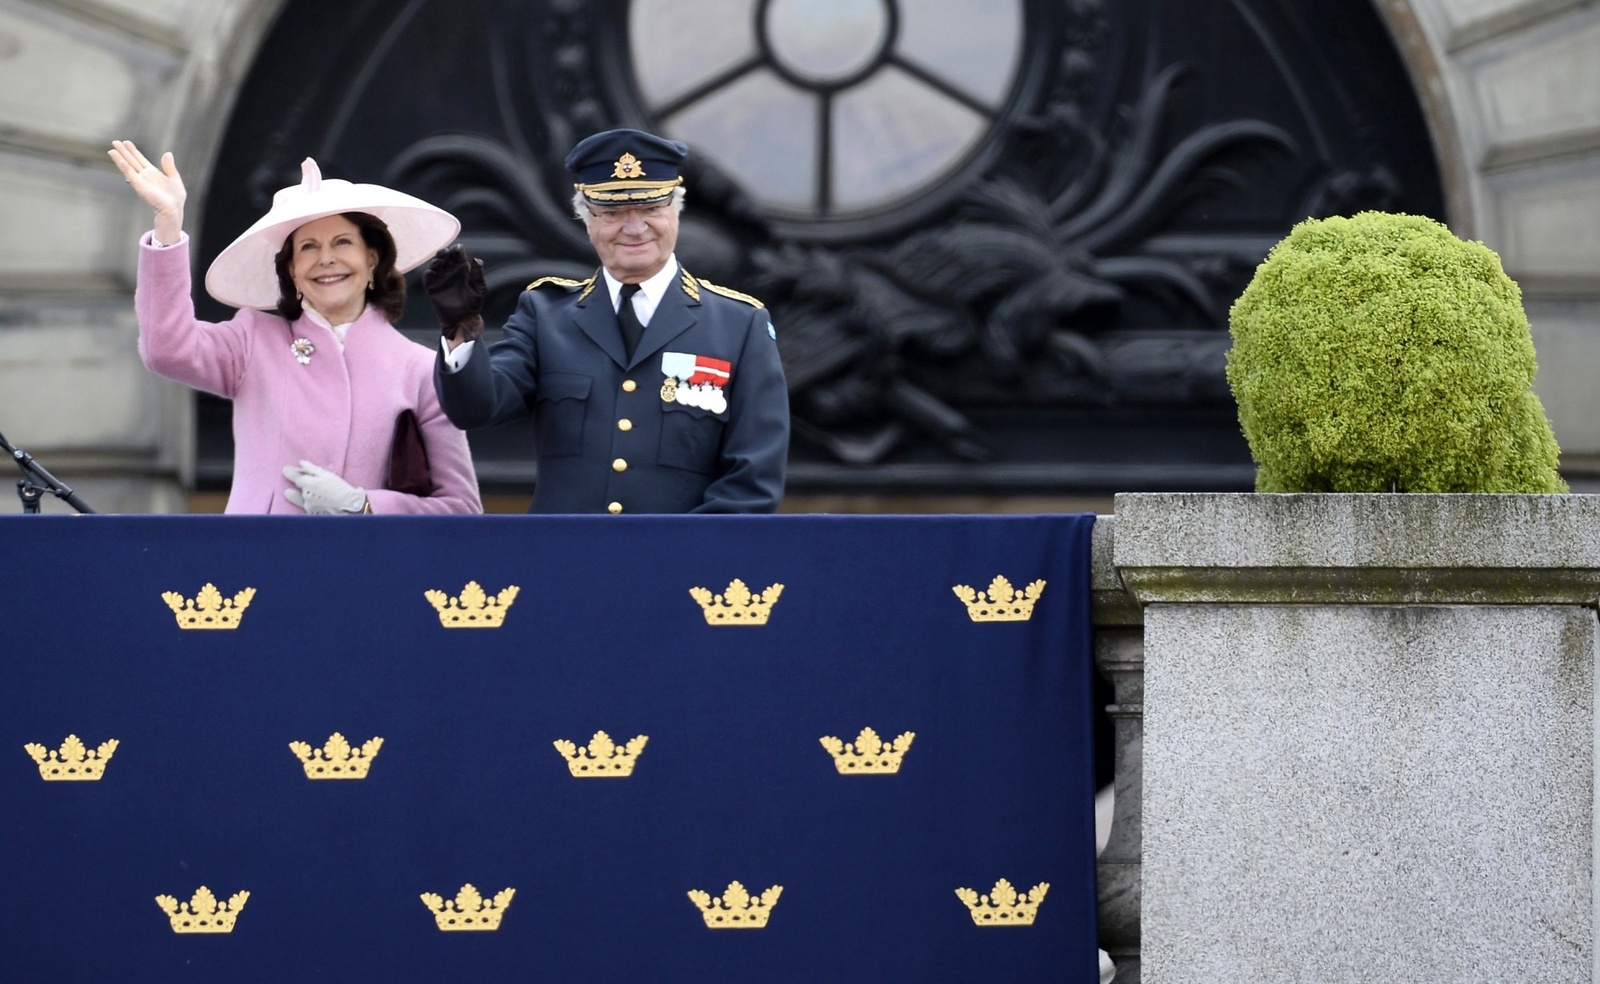 Kung Carl Gustaf med drottning Silvia vid sin sida tar emot sångarhyllning på Lejonbacken i Stockholm lördagen den 30 april som del av firandet av kung Carl Gustafs 70-årsdag.
Foto: Maja Suslin / TT